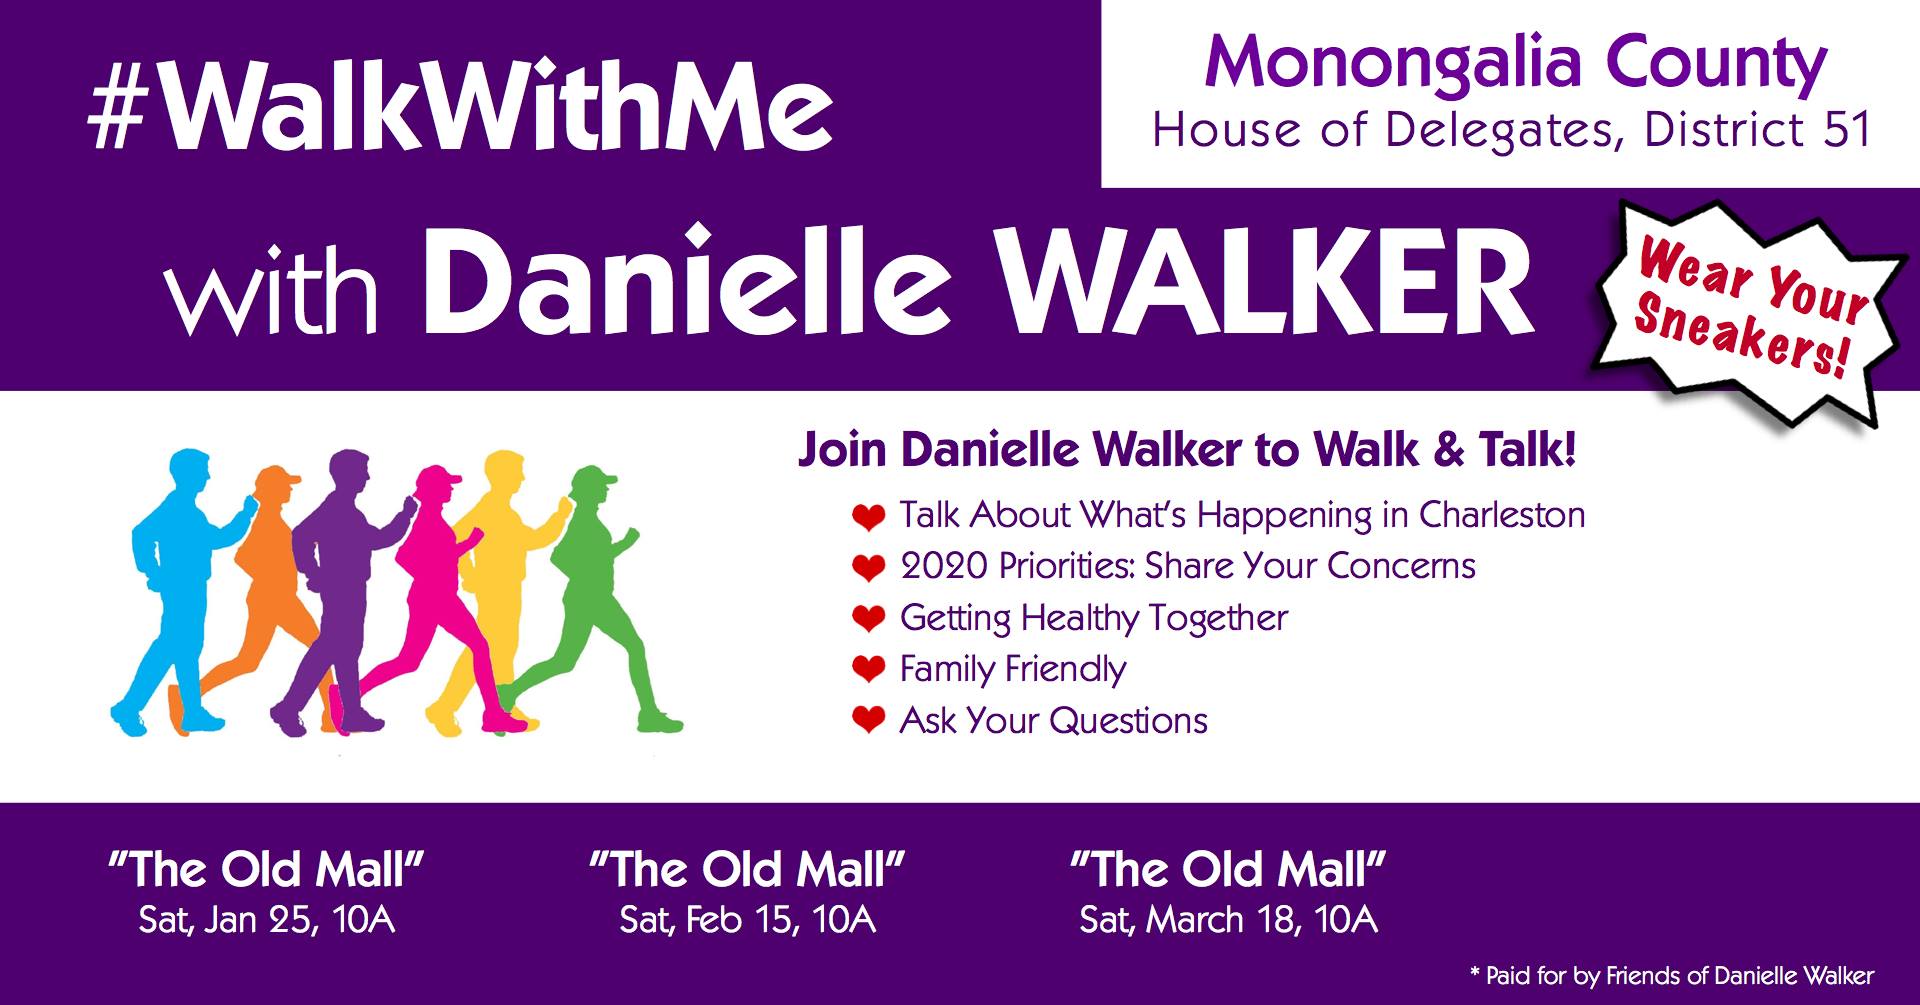 Walk with Danielle Walker